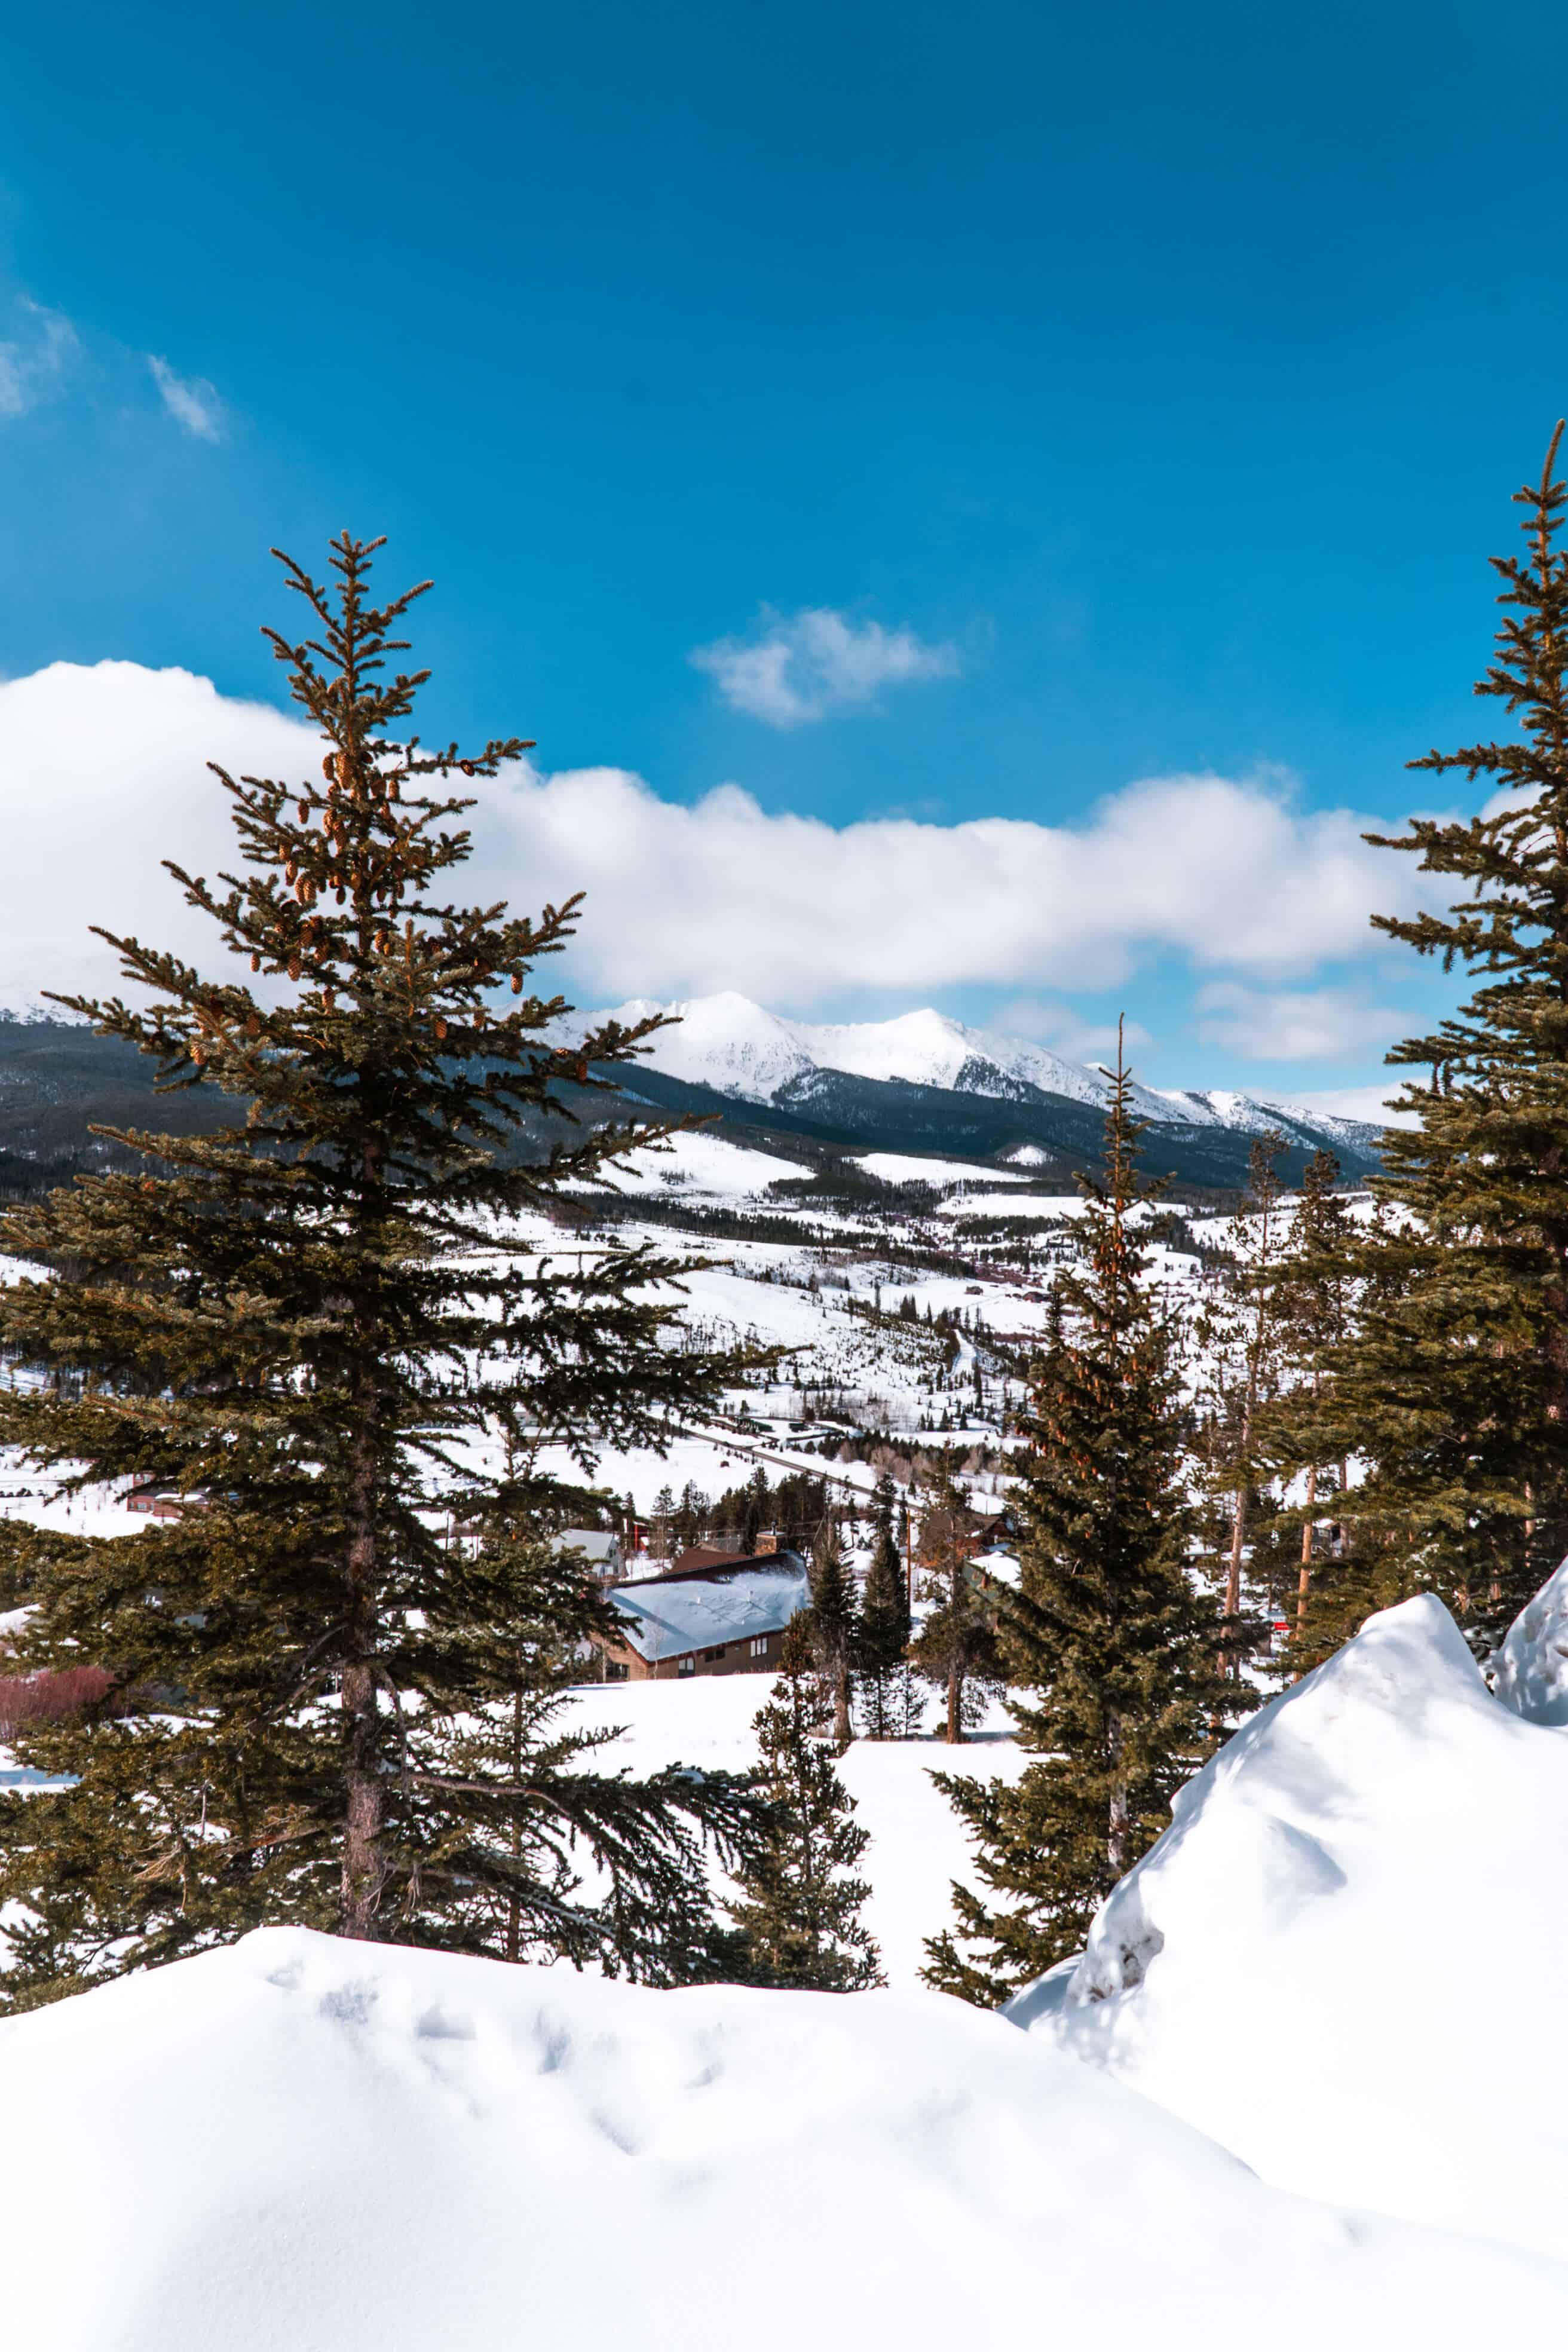 Mountain views over Breckenridge, Colorado | The Ultimate Guide to Breckenridge in the Winter